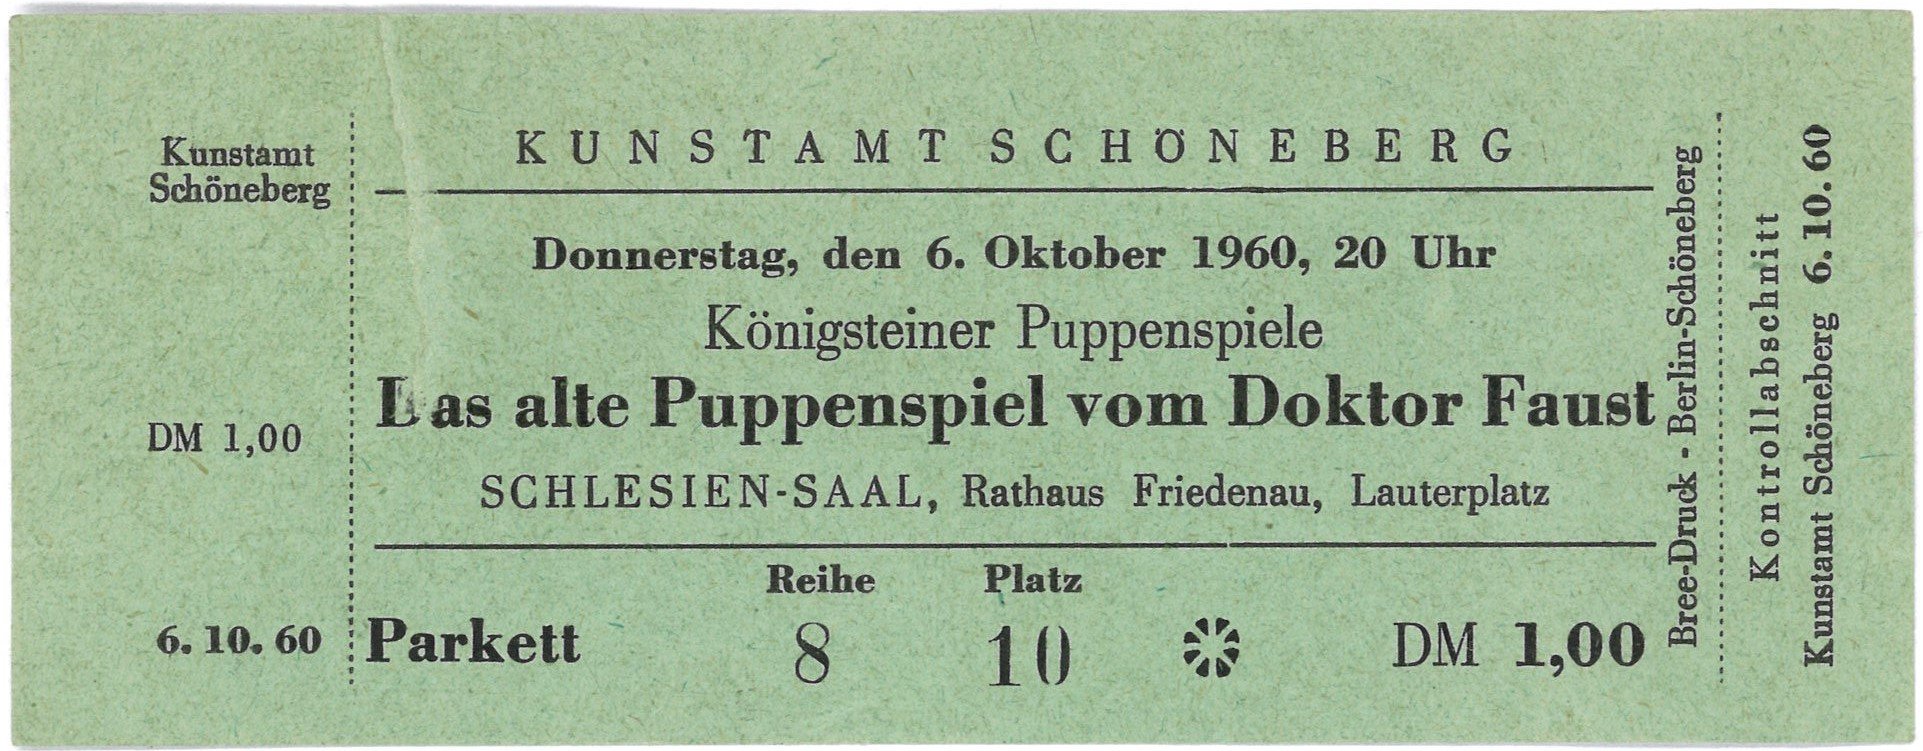 Berlin-Friedenau: Aufführung der Königsteiner Puppenspiele am 6. Oktober 1960 (Landesgeschichtliche Vereinigung für die Mark Brandenburg e.V., Archiv CC BY)